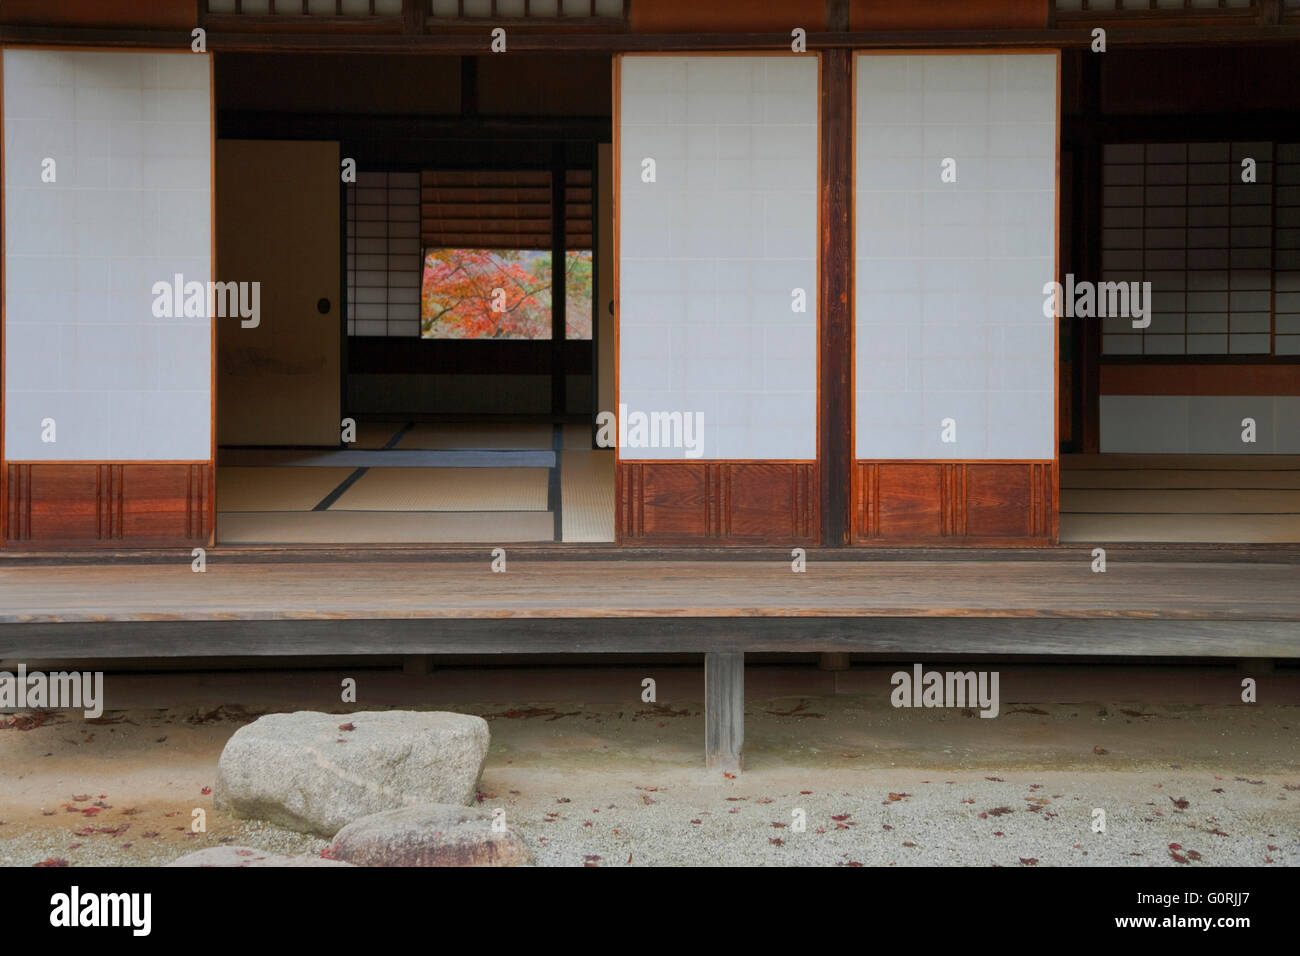 Una vista esterna mostra il tradizionale veranda in legno, shoe-Rimozione gradino di pietra e shoji carta-e-porte in legno scorrevoli del Jugetsu-kan padiglione tè all'interno di Shugakuin Villa Imperiale, nella zona nord-est di Kyoto, Giappone. Foto Stock